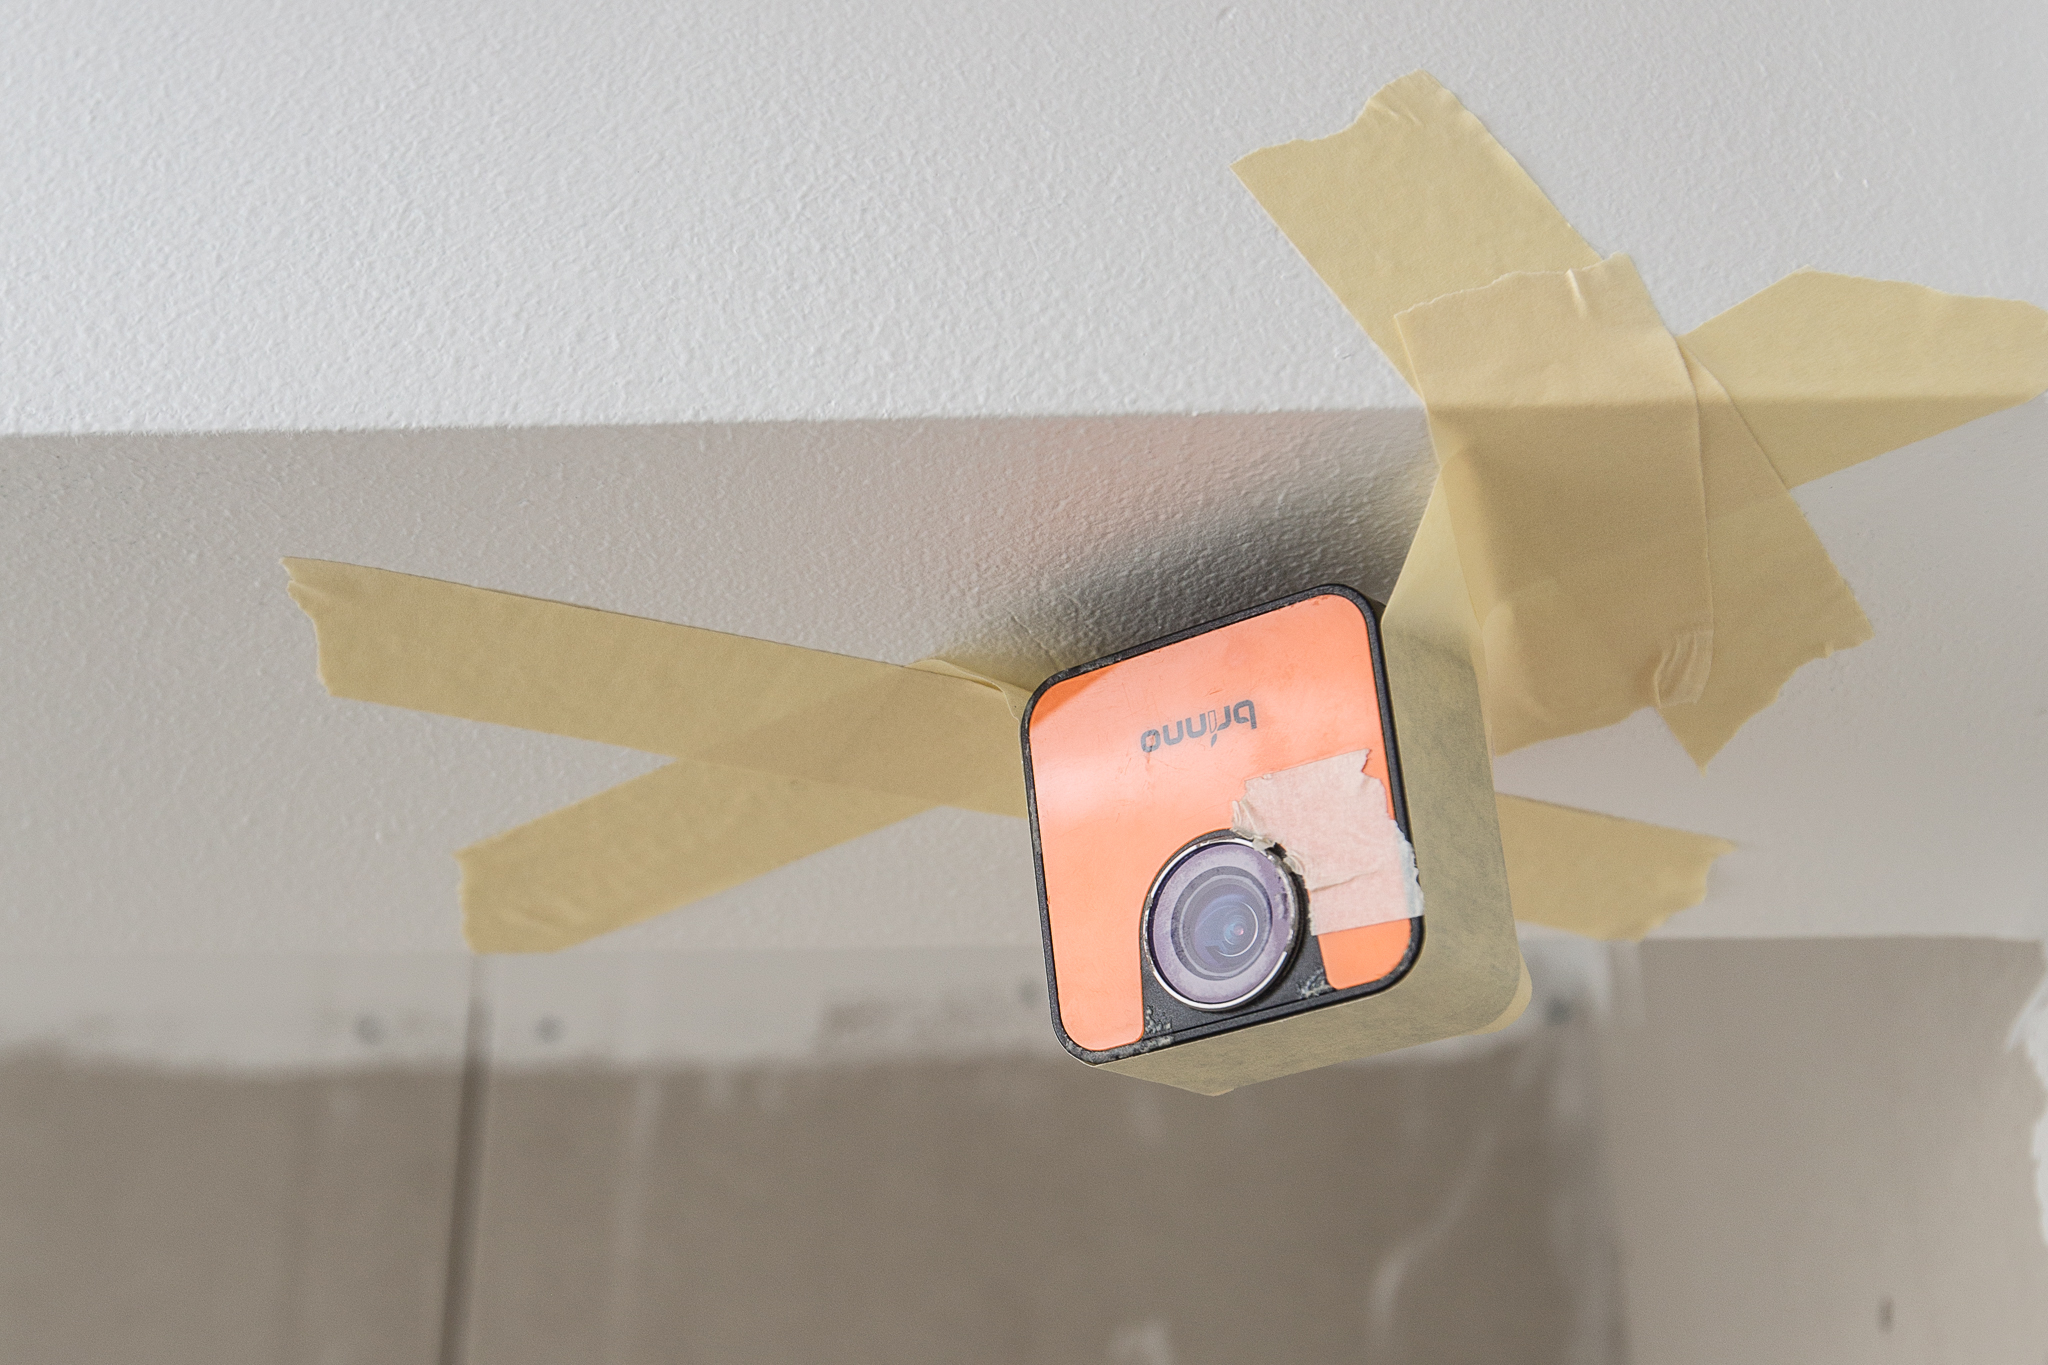  Jag har monterat en timelapse-kamera i taket i badrummet för att skapa en film på nån minut där man ser badrummet växa fram. Kika in om en vecka så ska den nog ligga uppe! 